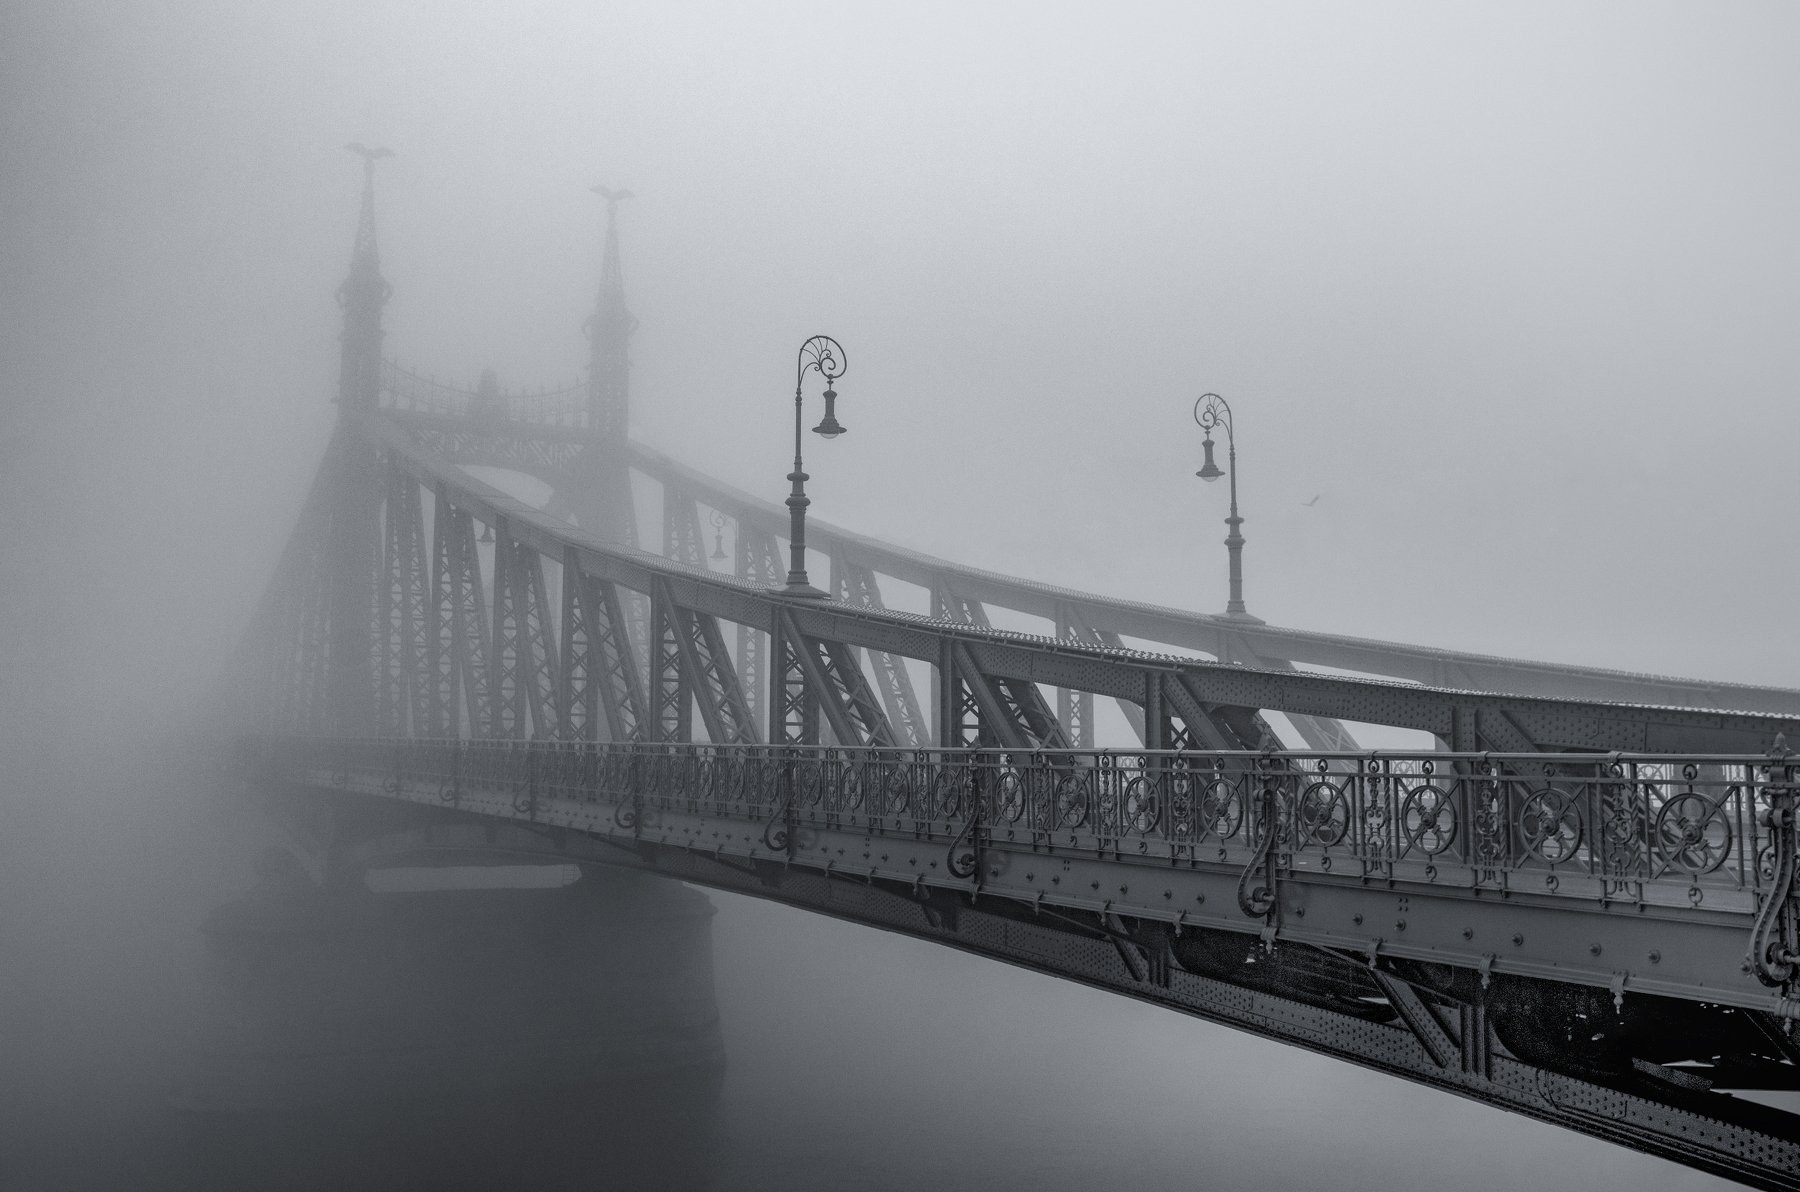 будапешт, мост, туман, река, город, пейзаж, венгрия, европа, путешествие, архитектура, черно-белый, b&w, Сергей Давыдов